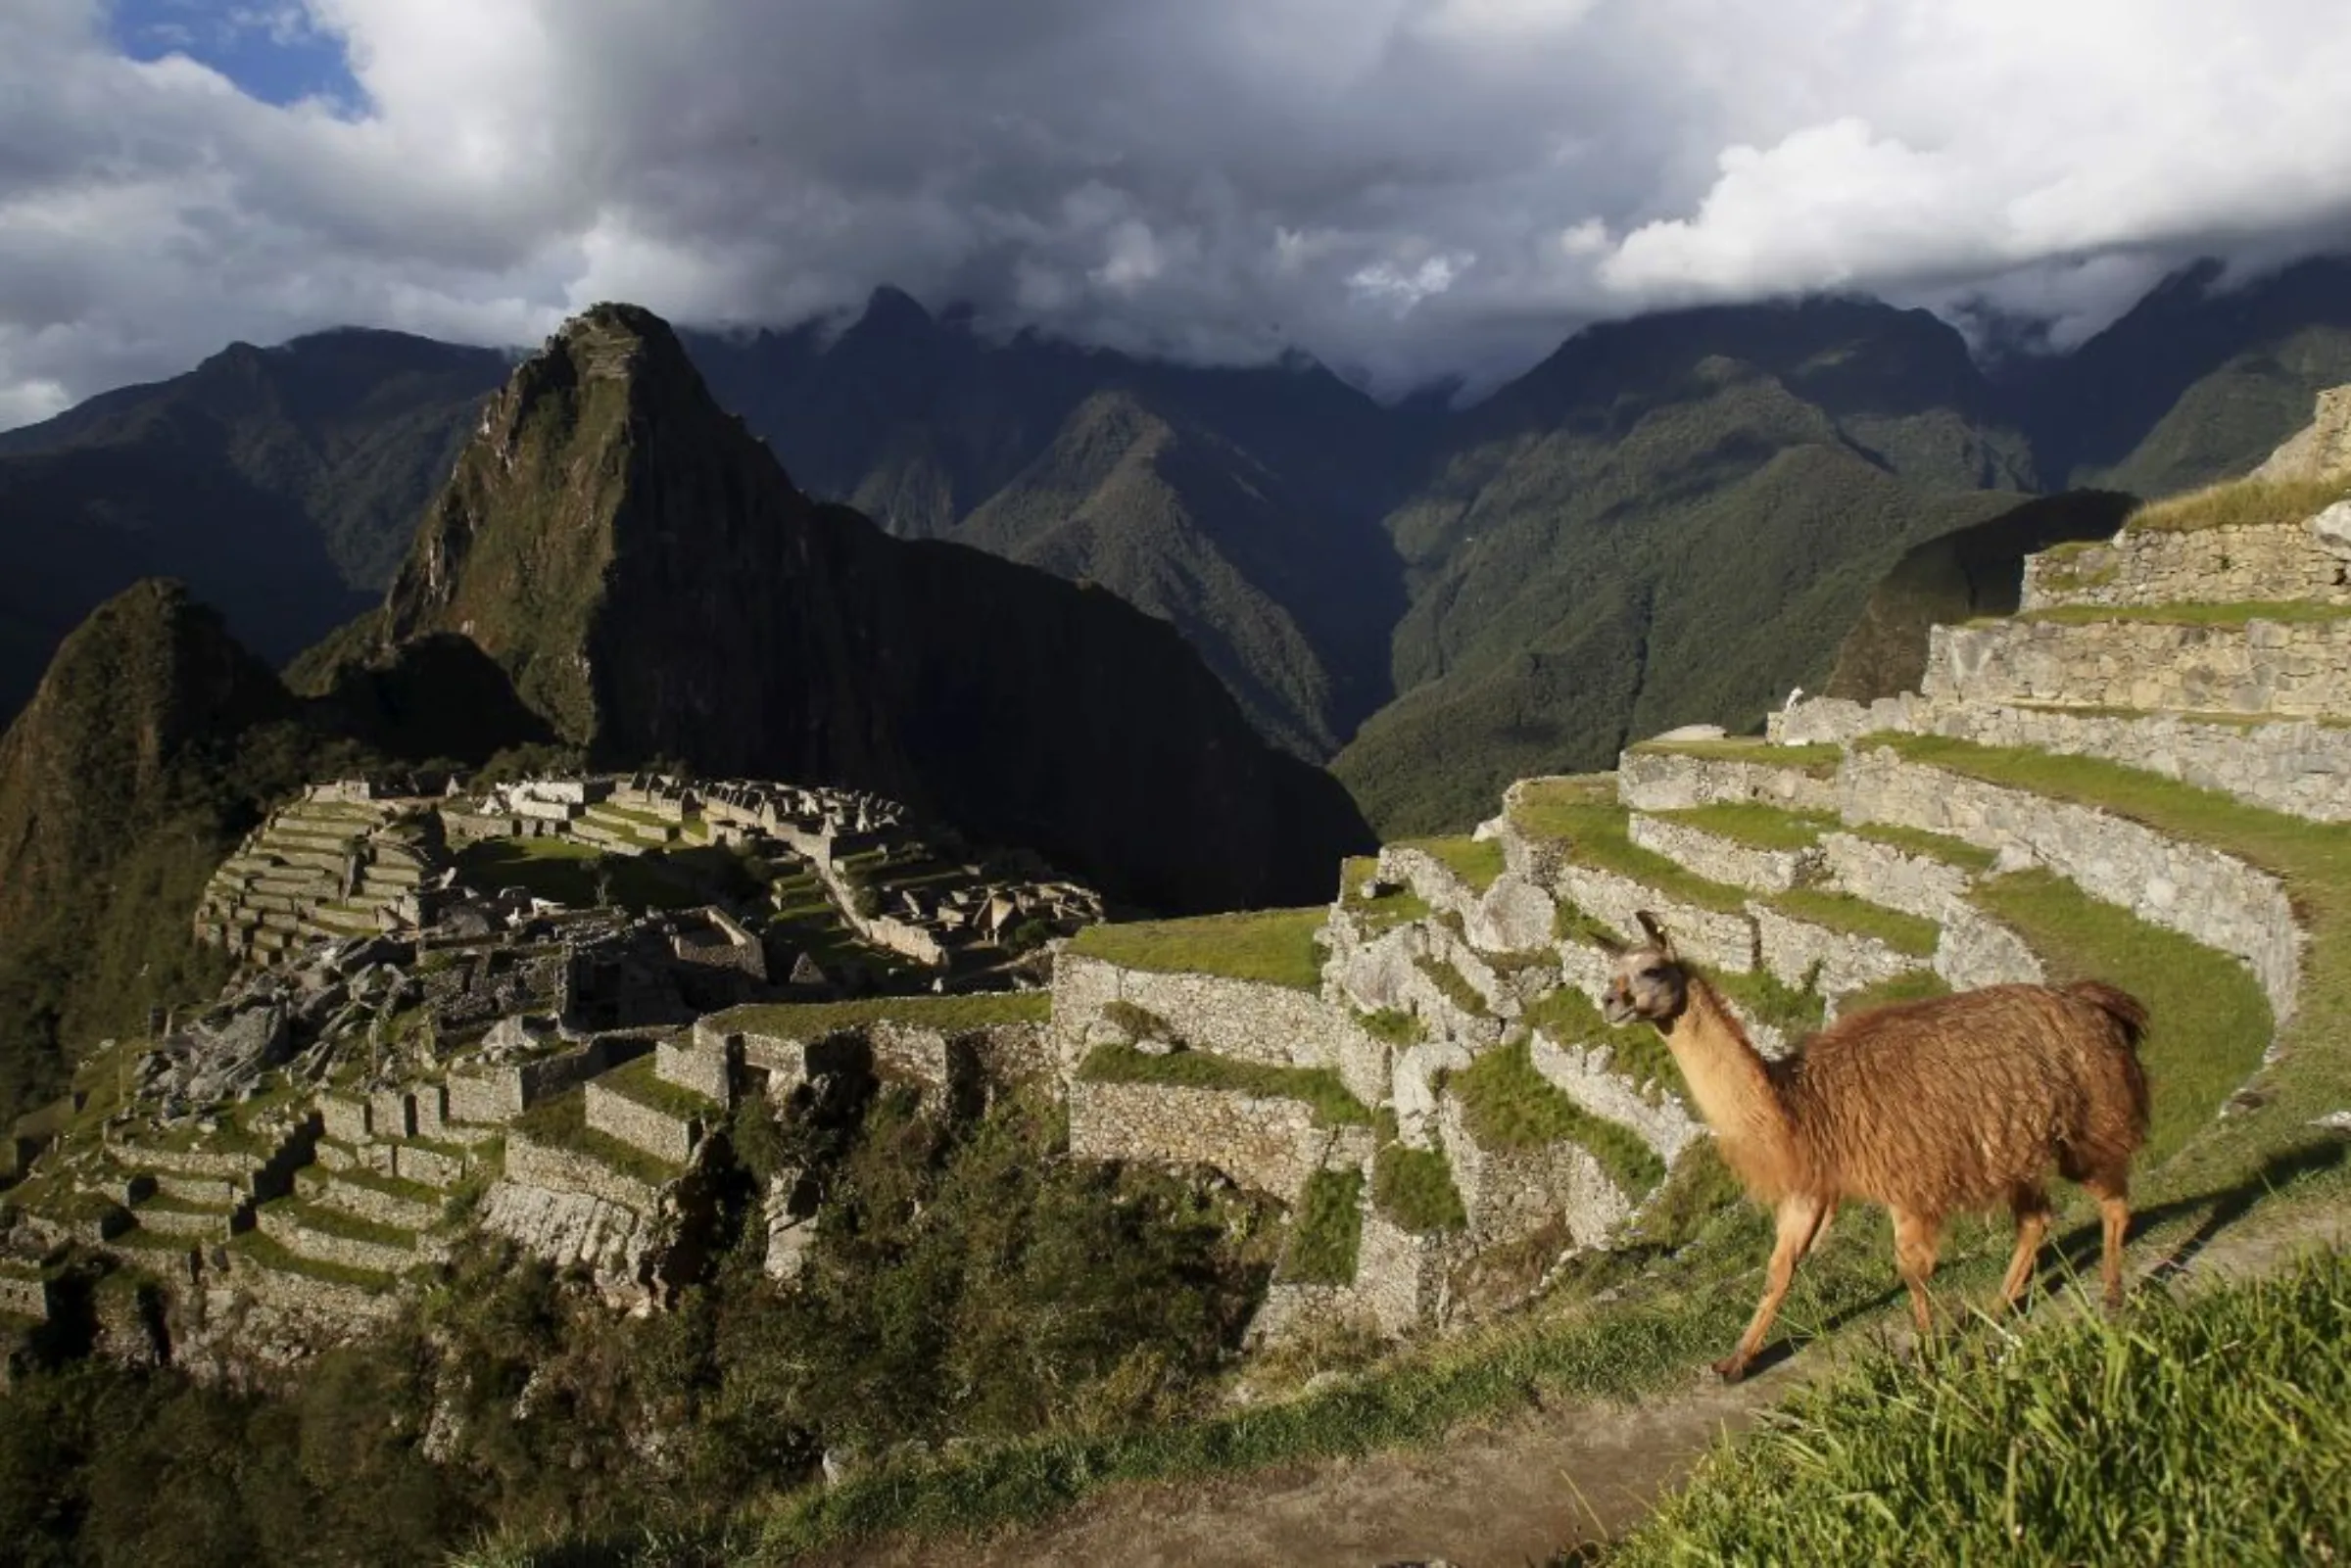 A llama is seen near the Inca citadel of Machu Picchu in Cusco, Peru, December 2, 2014